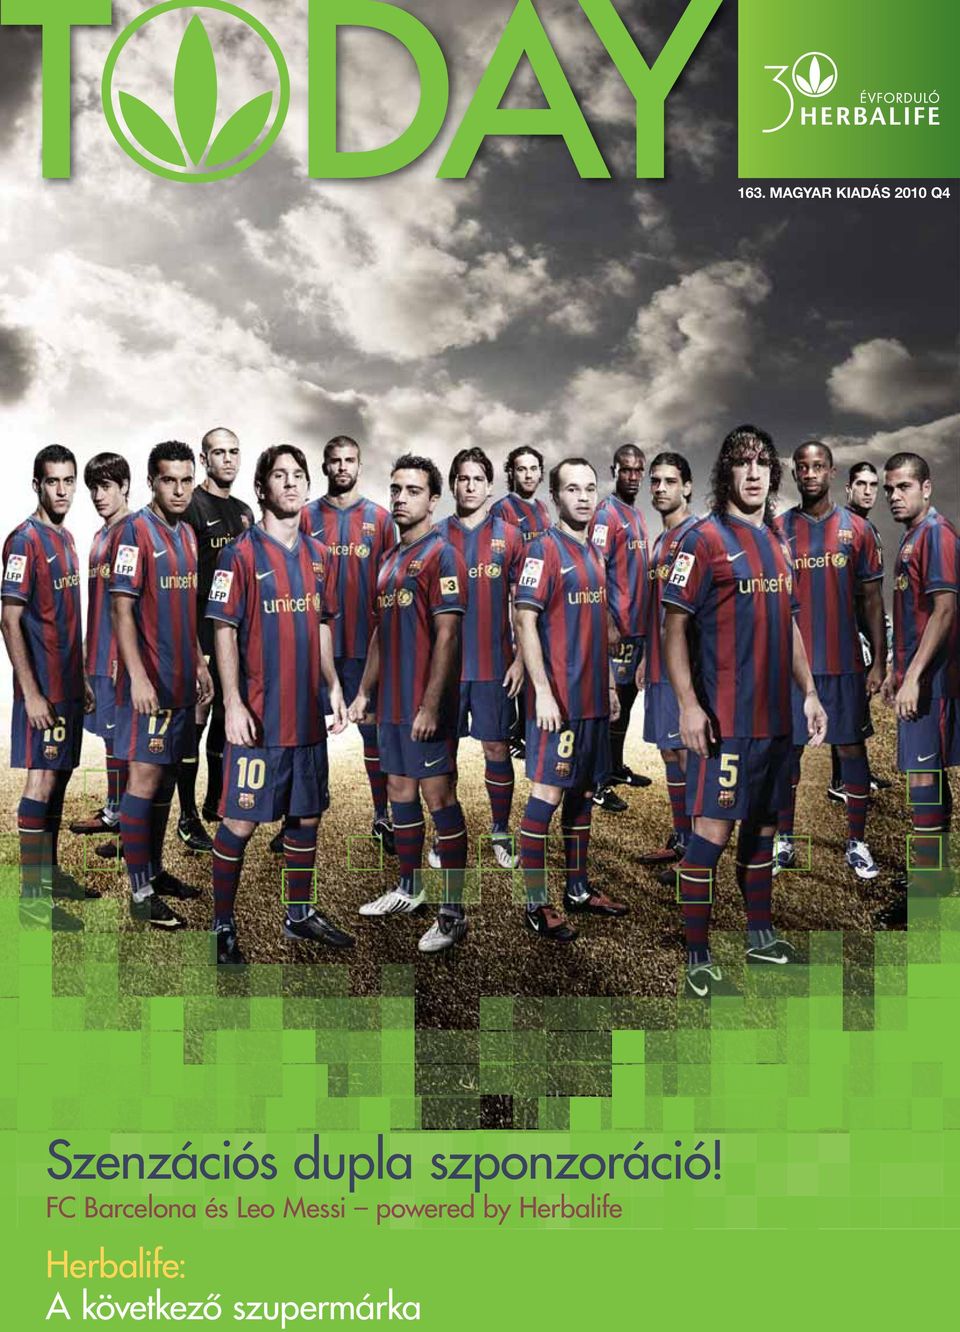 FC Barcelona és Leo Messi powered